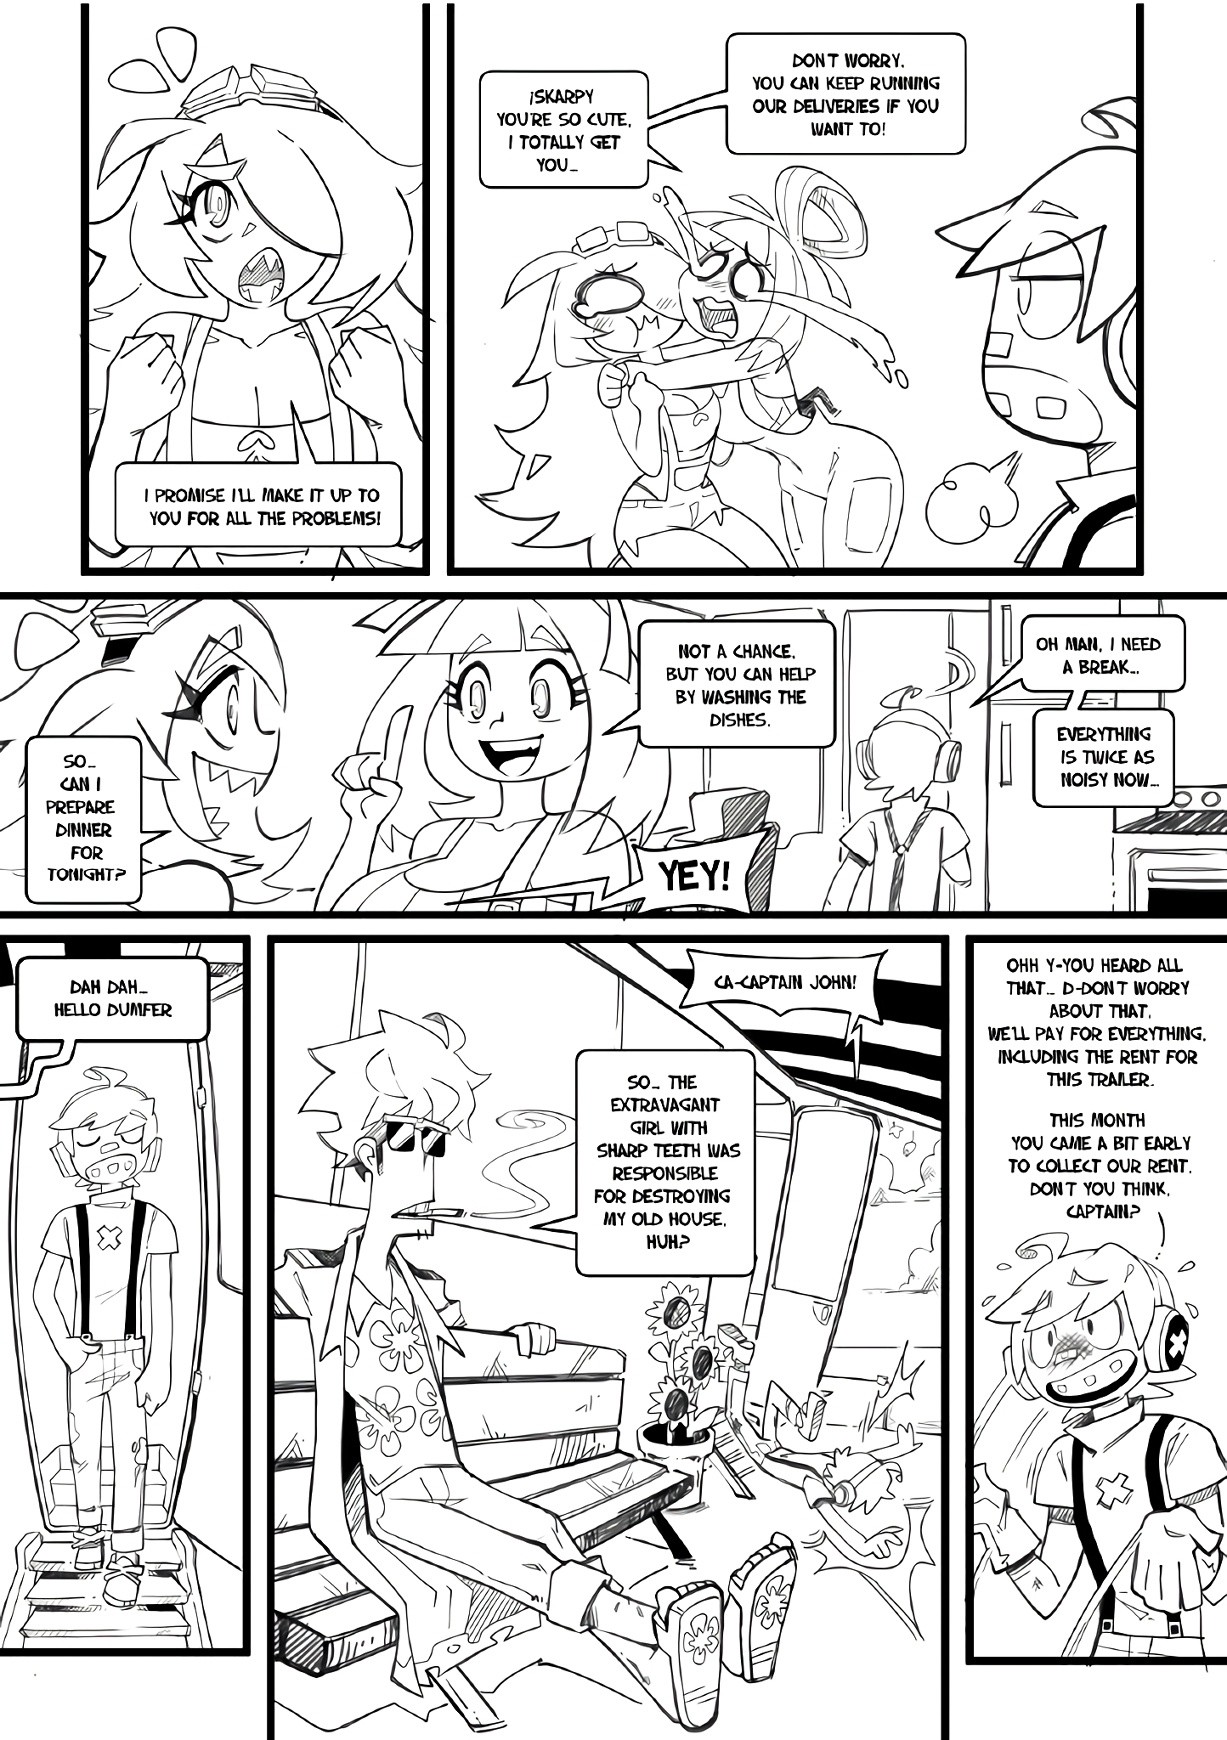 Skarpworld 11: La Petite Mort porn comic picture 29